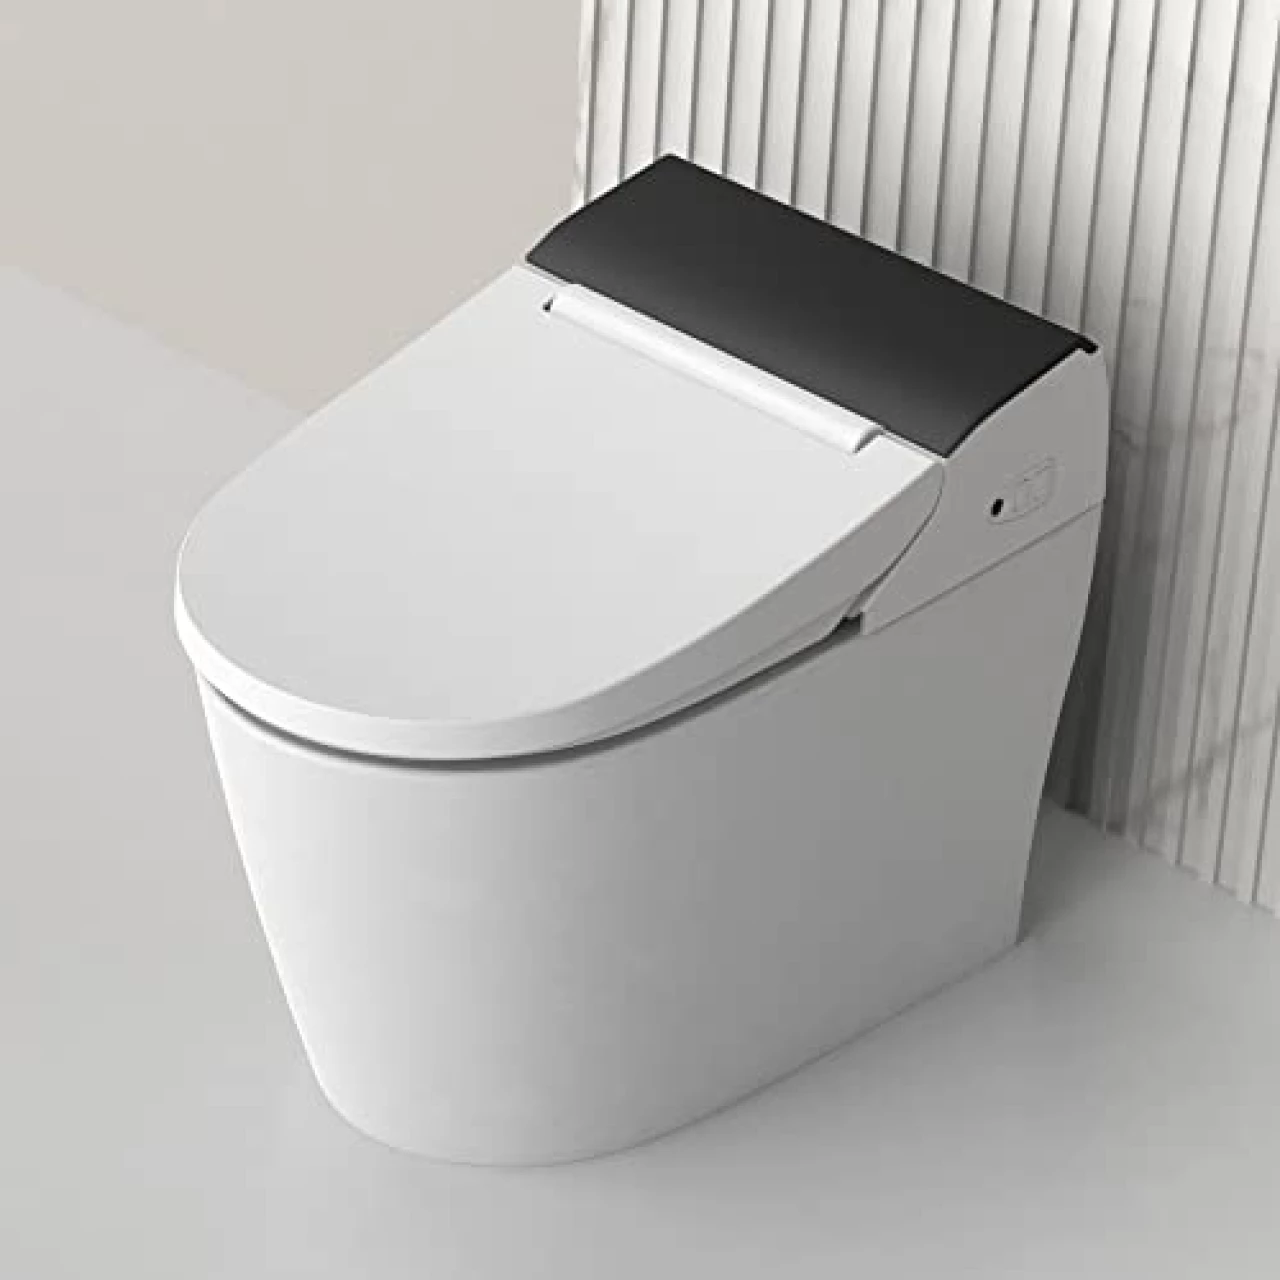 VOVO STYLEMENT TCB-8100B Smart Bidet Toilet